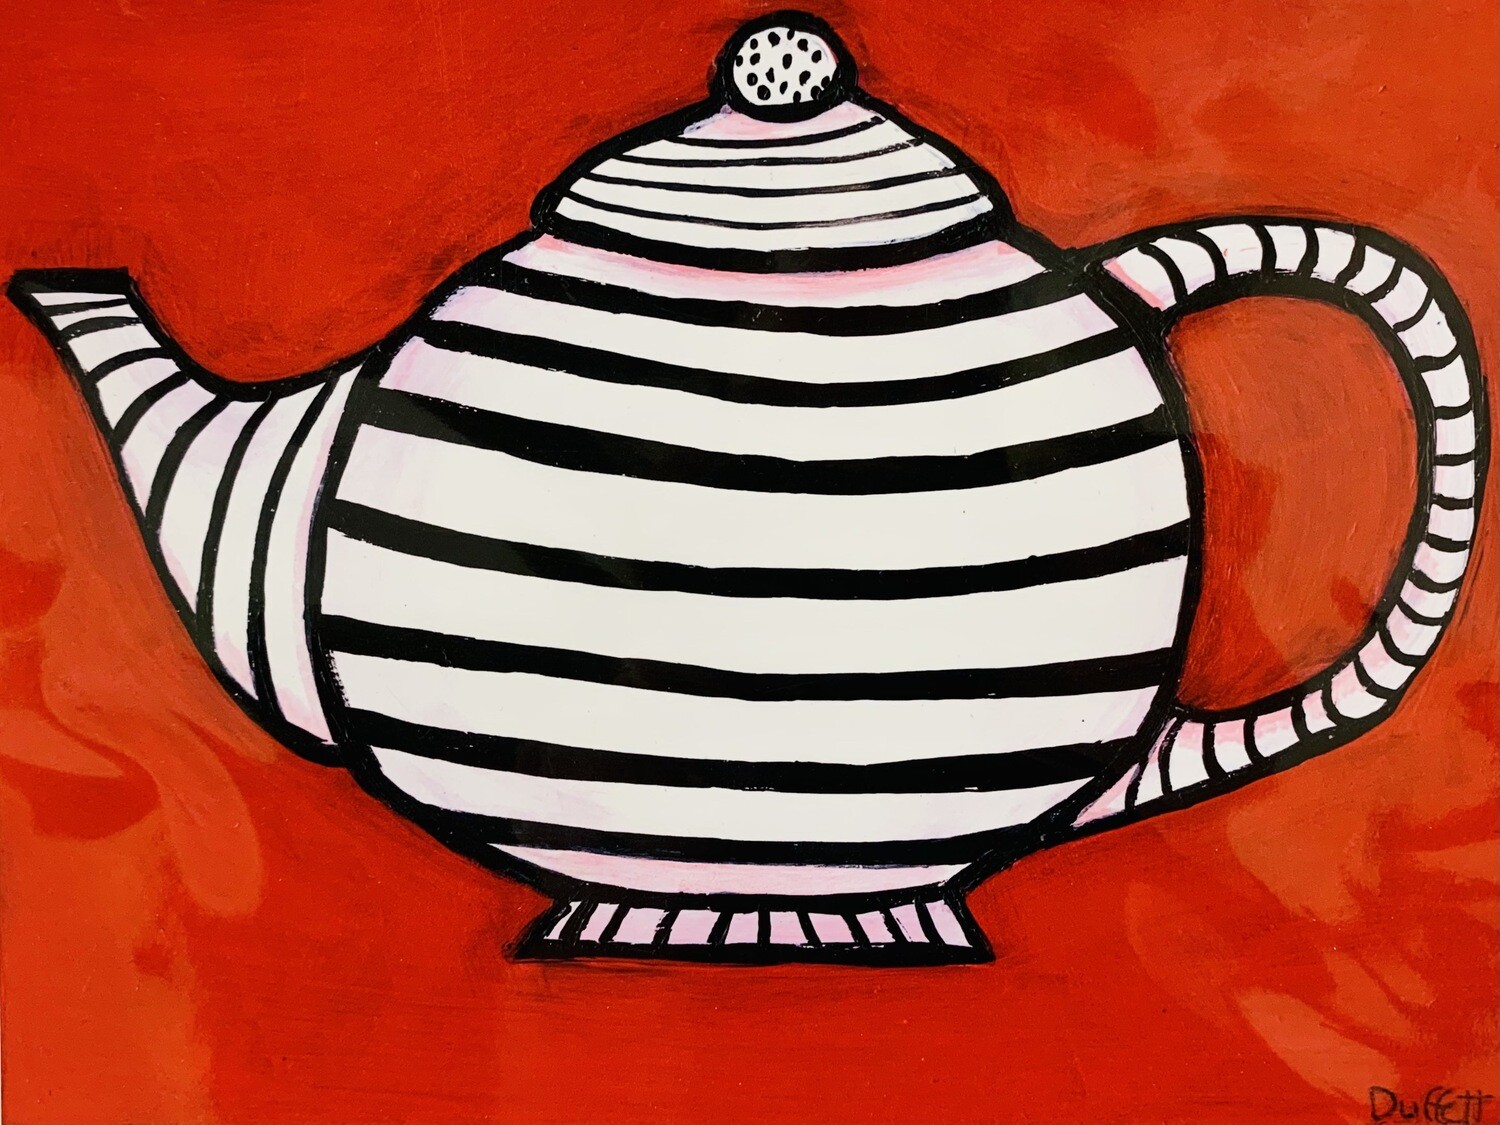 Striped Tea Pot - Shelagh Duffett